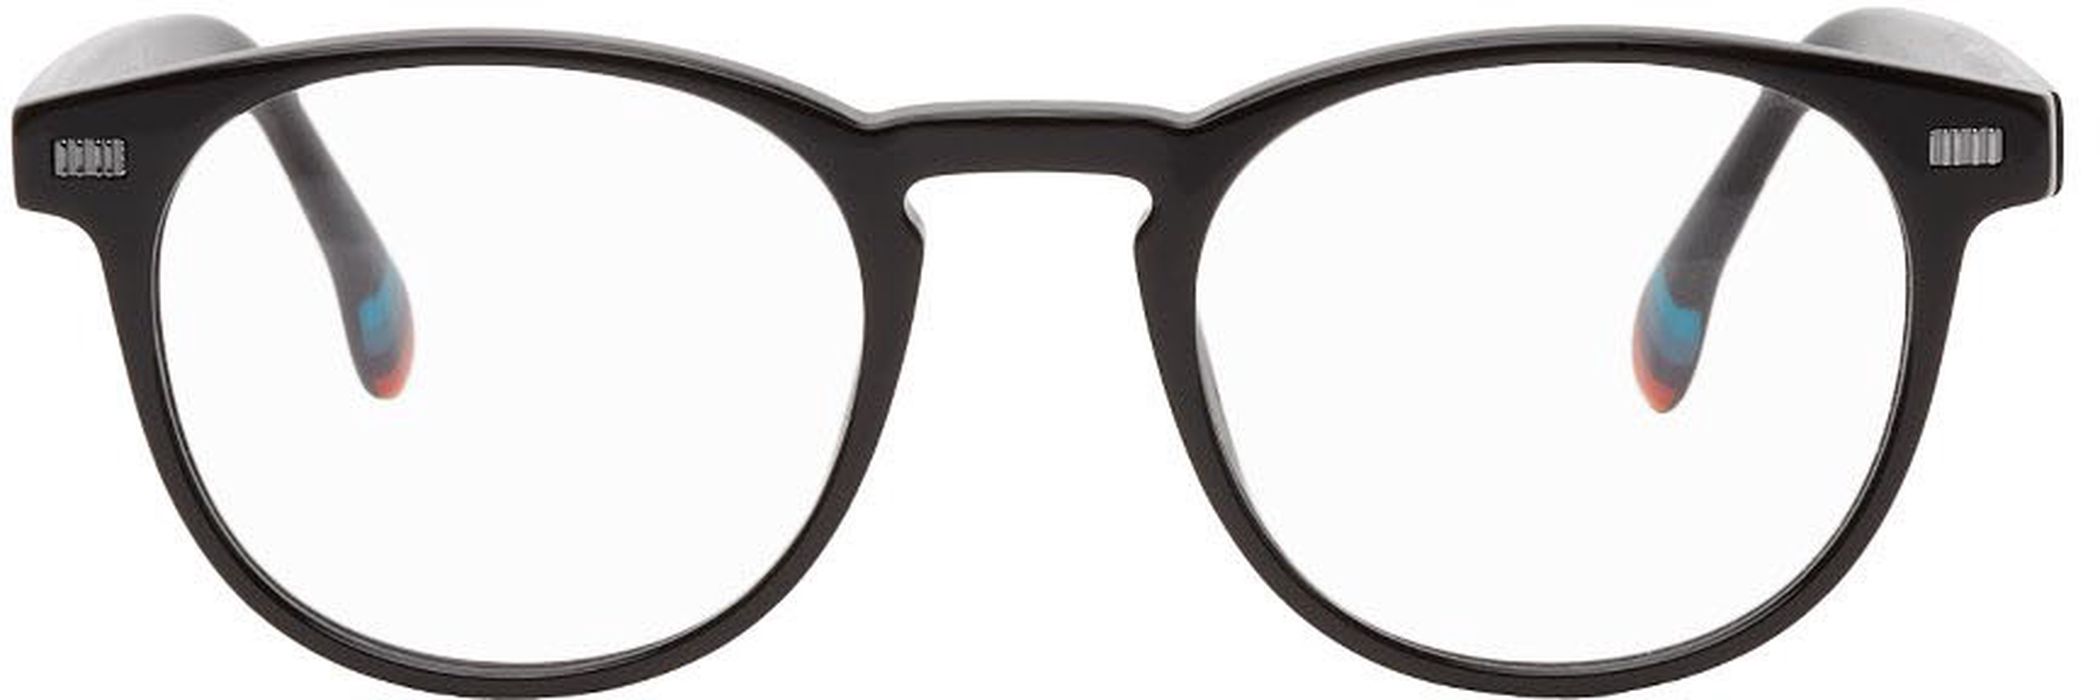 Paul Smith Black Darwin Glasses